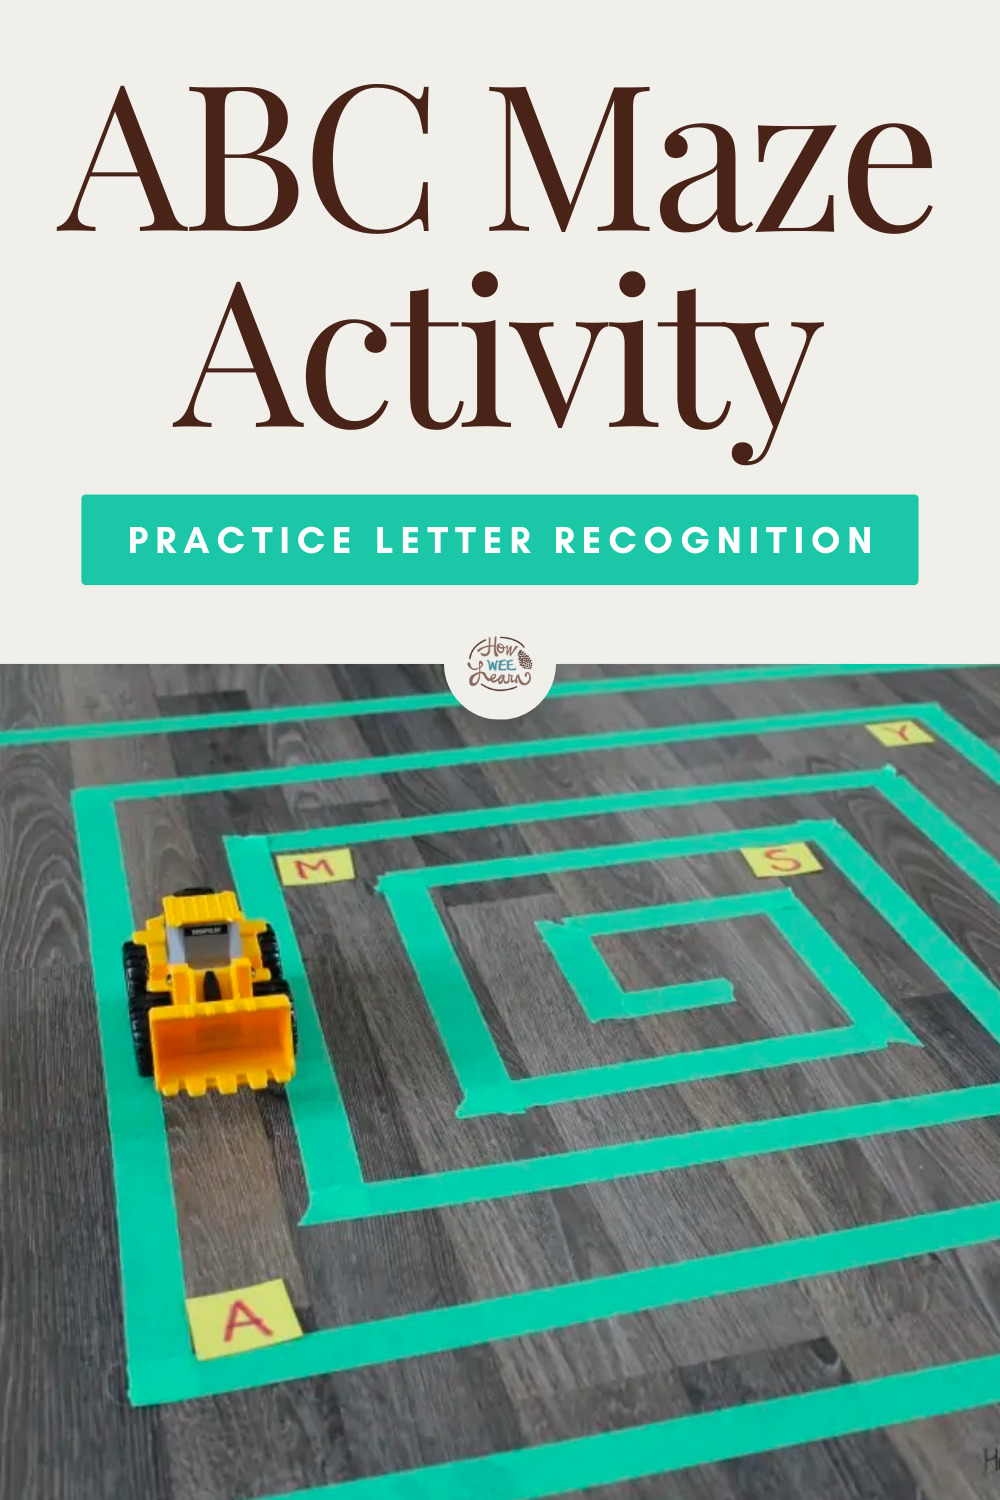 ABC Maze Activity: Practice Letter Recognition